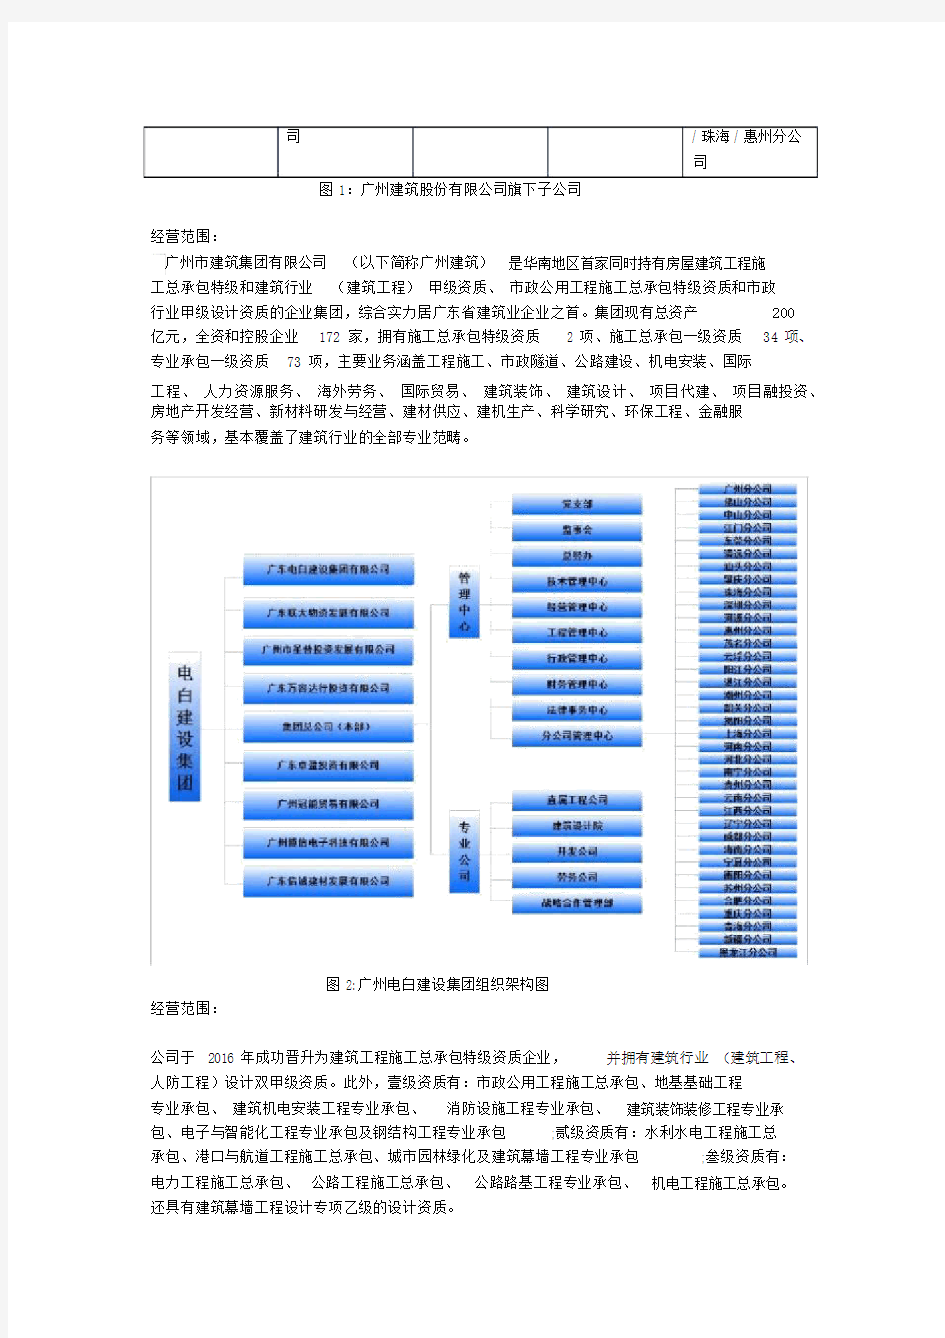 广州建筑股份有限公司组织架构